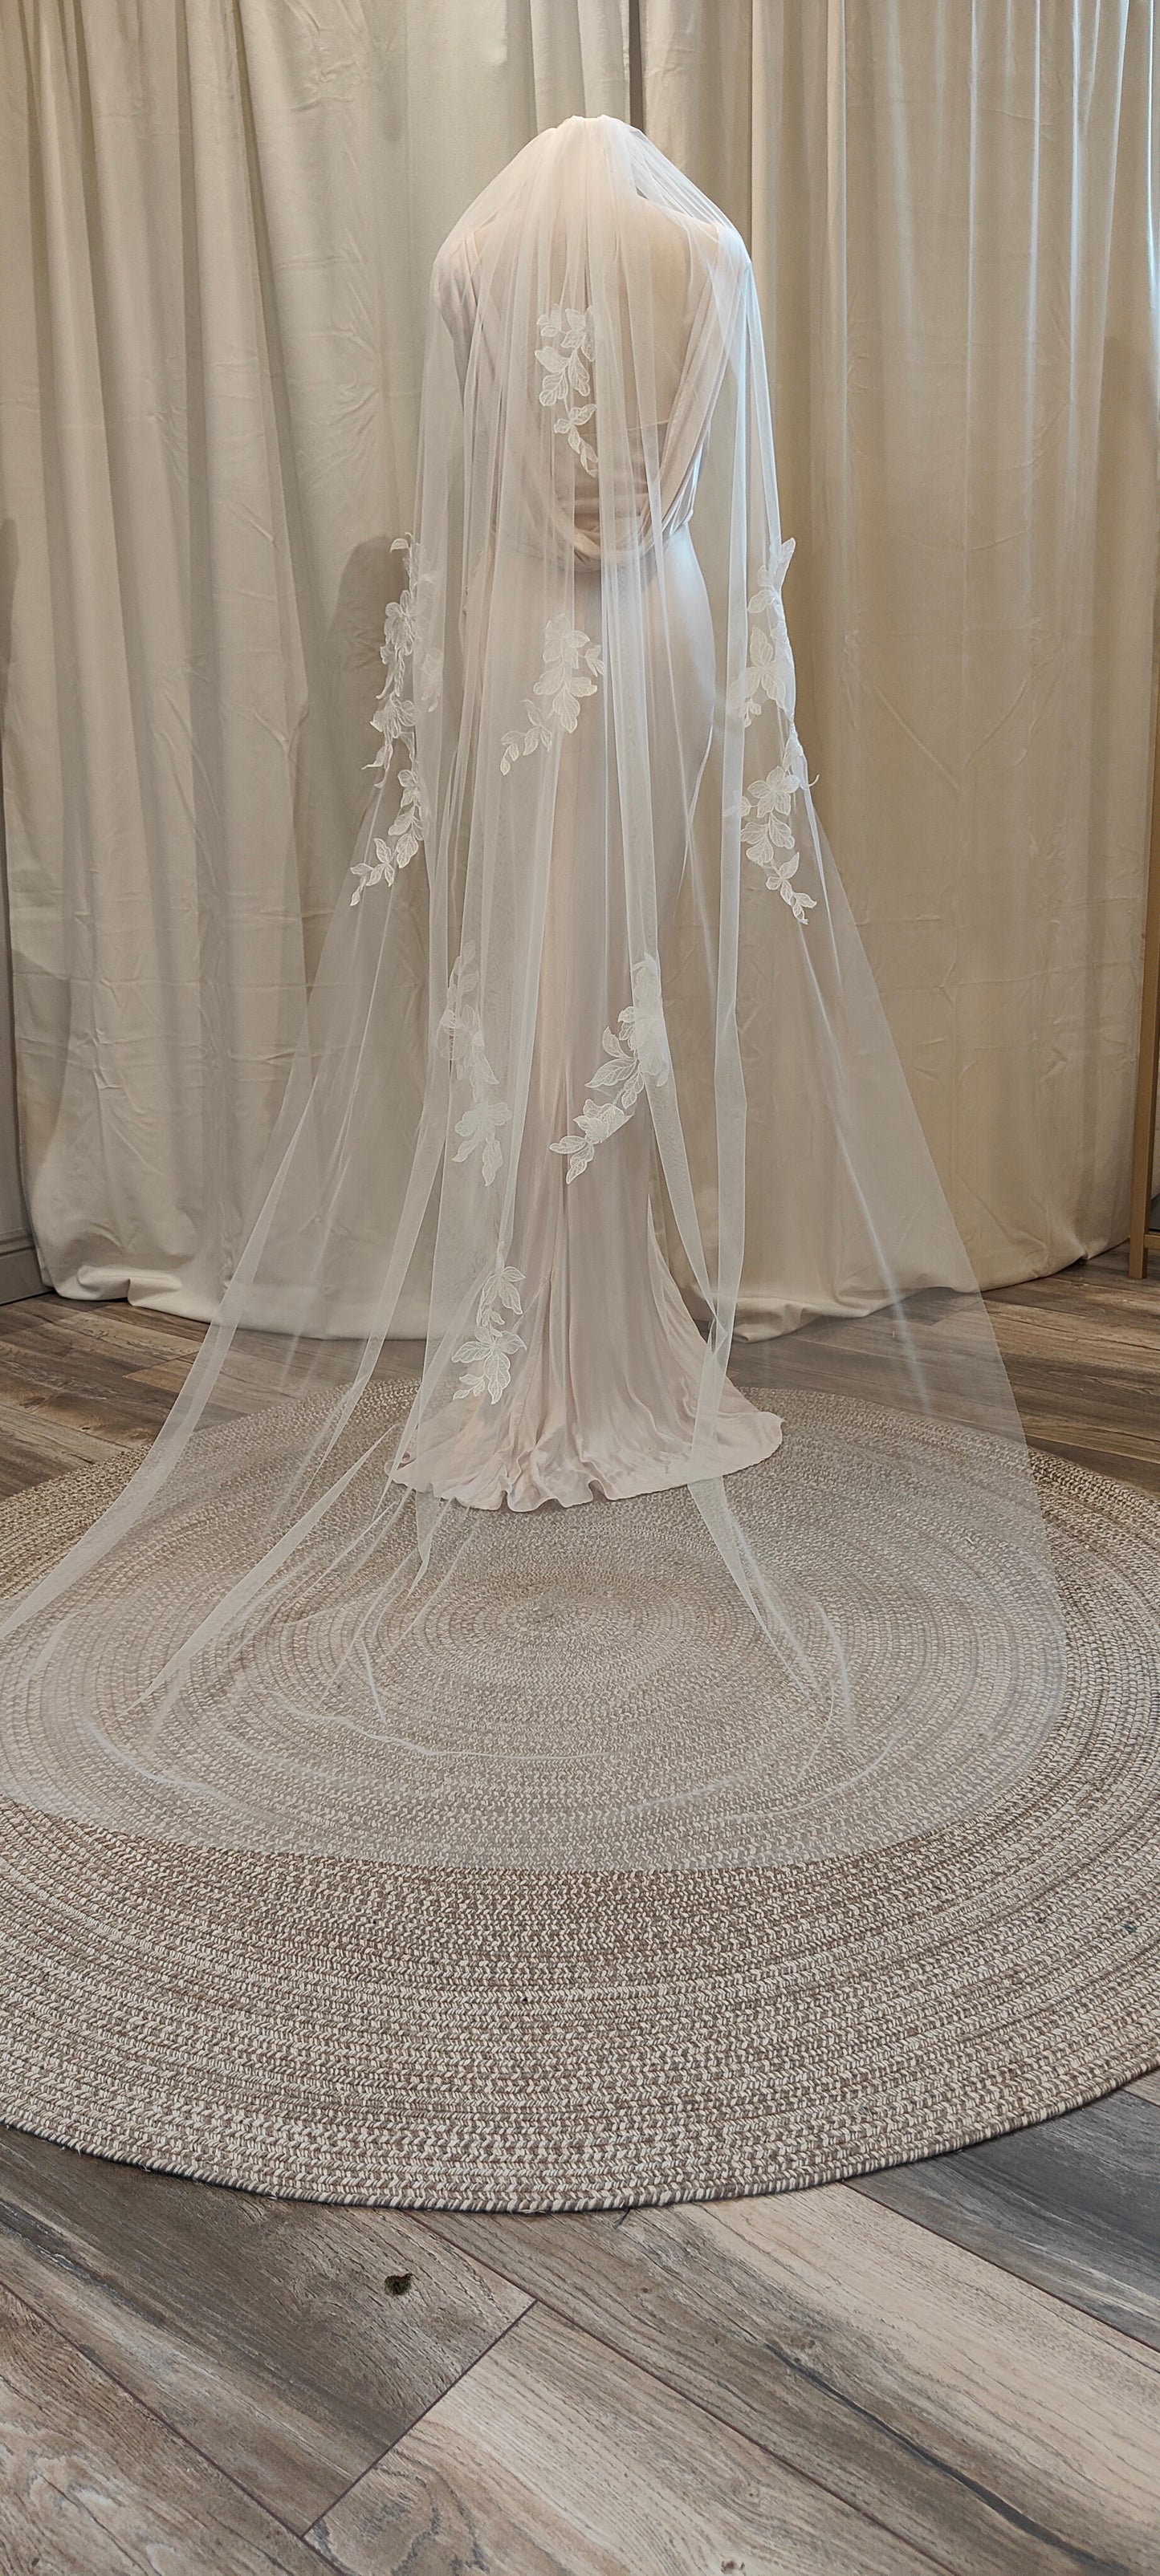 CAMILLE - Contemporary floral lace applique veil